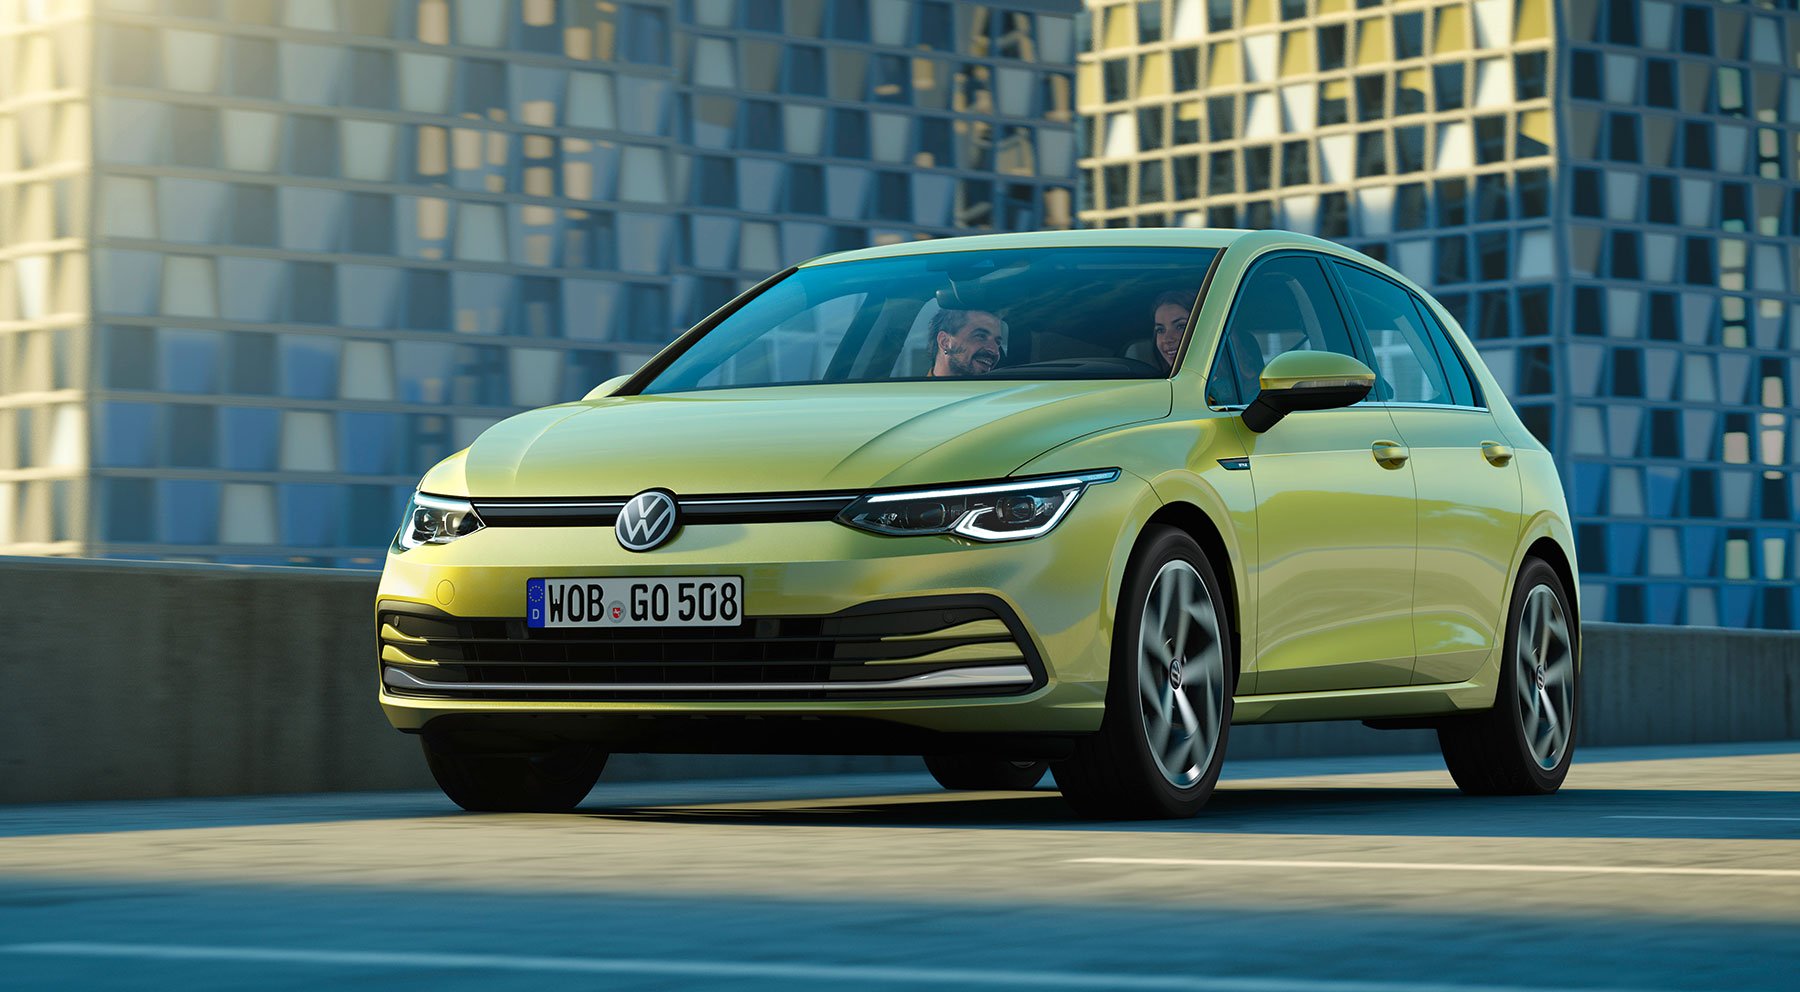 Immagini Ufficiali nuova Volkswagen Golf 8 2020